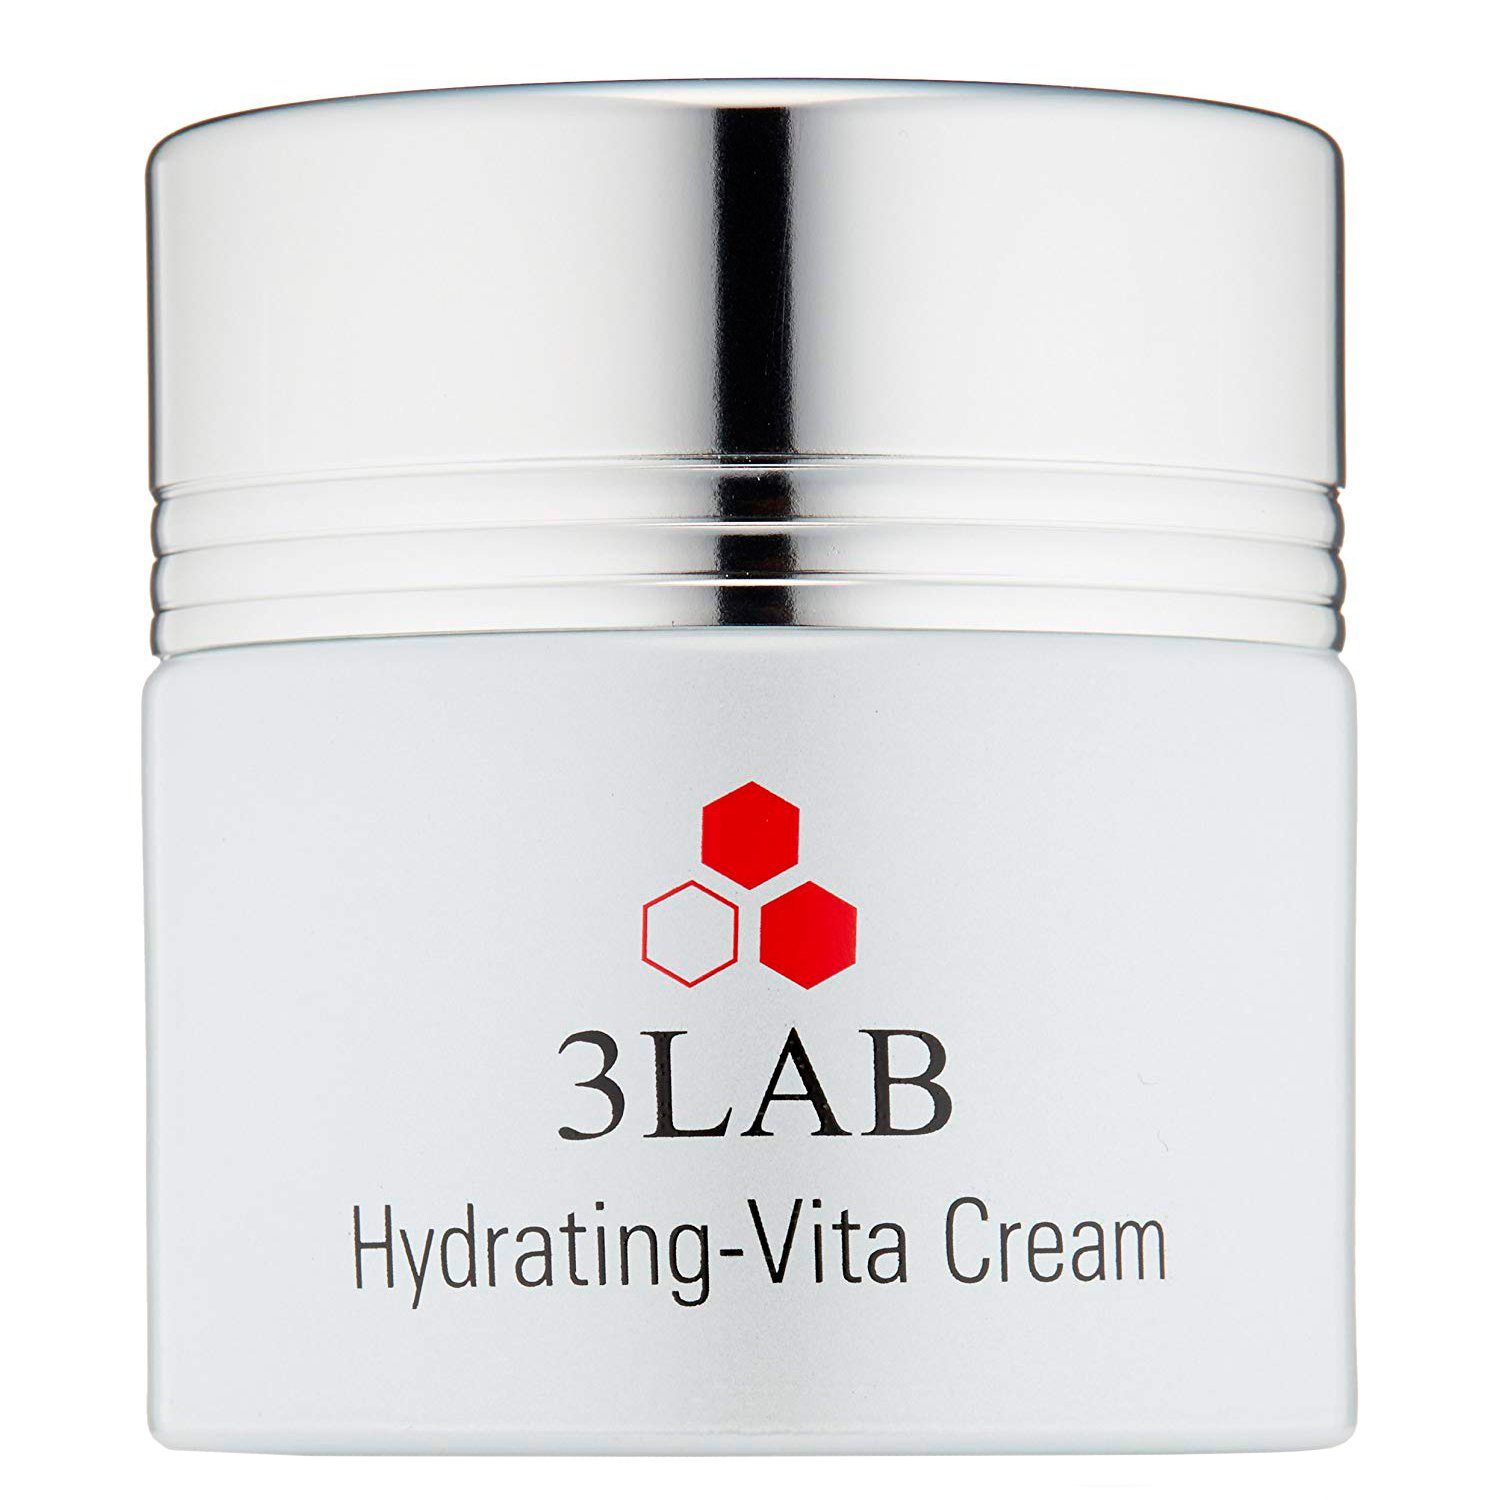 Увлажняющий дневной крем для лица Hydrating-Vita Cream 3LAB, 60мл